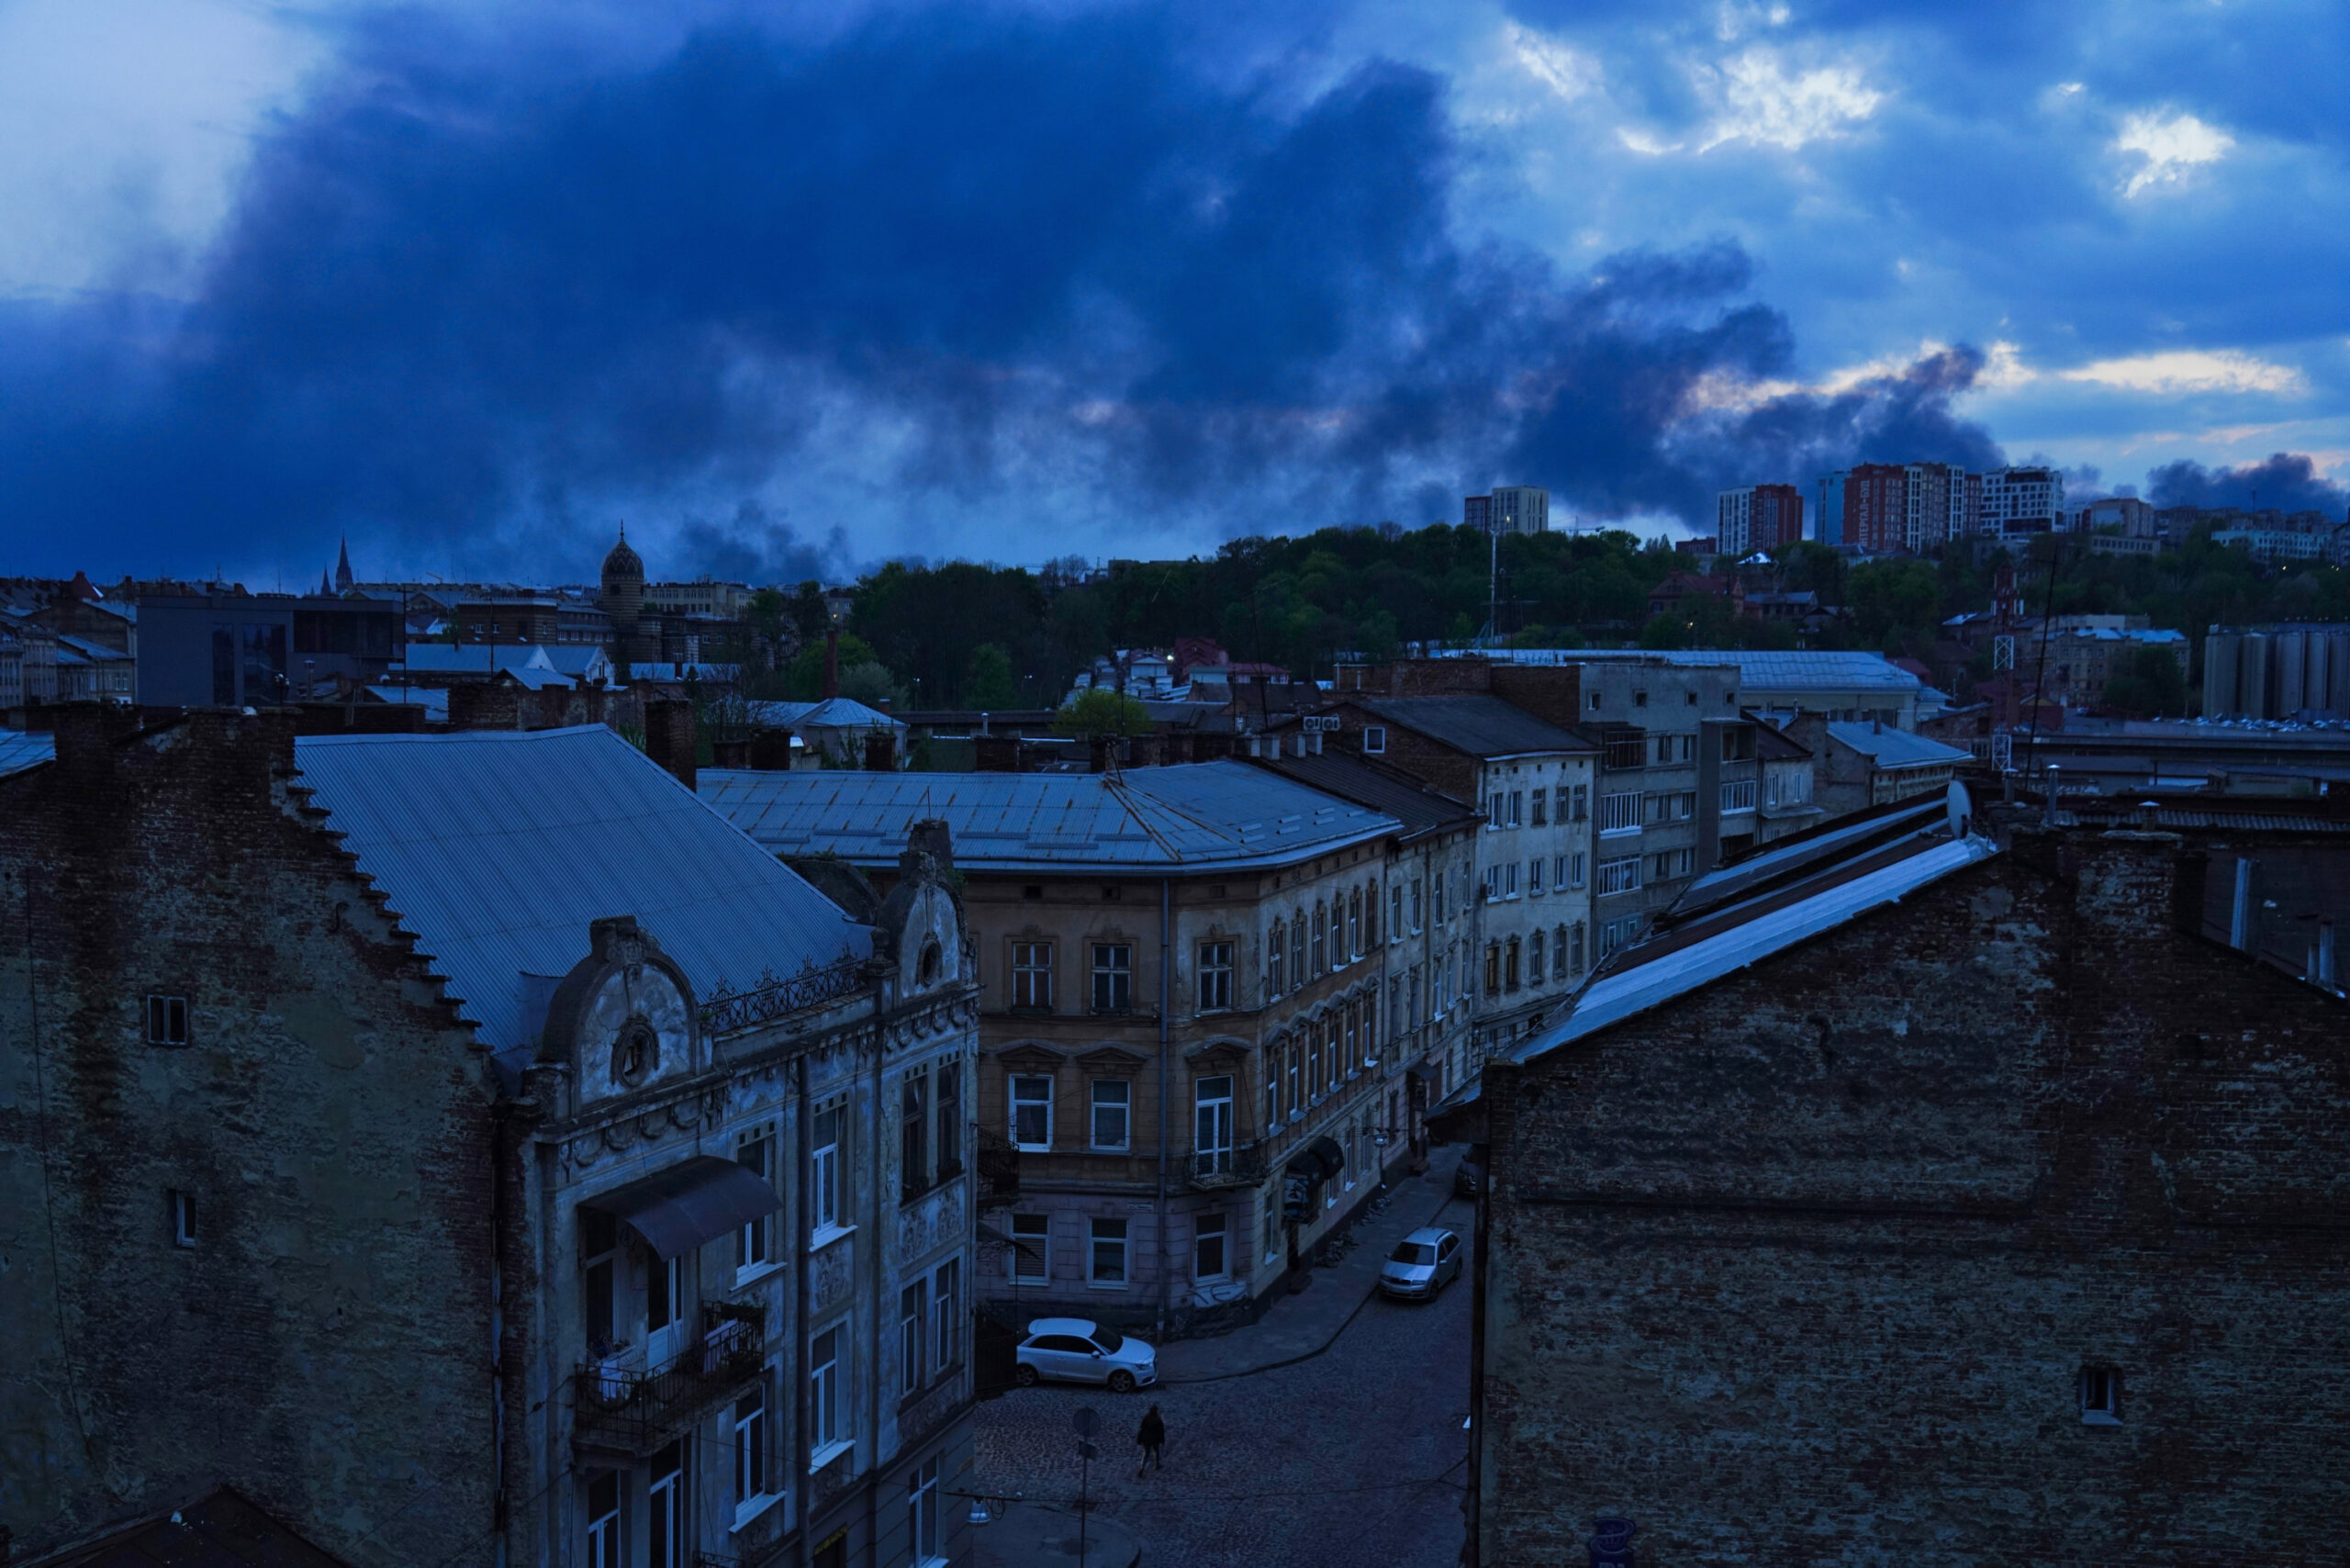 Über Lwiw in der Westukraine steigt Rauch auf. Die Stadt ist in der Nacht von Dienstag auf Mittwoch von Russland beschossen worden.